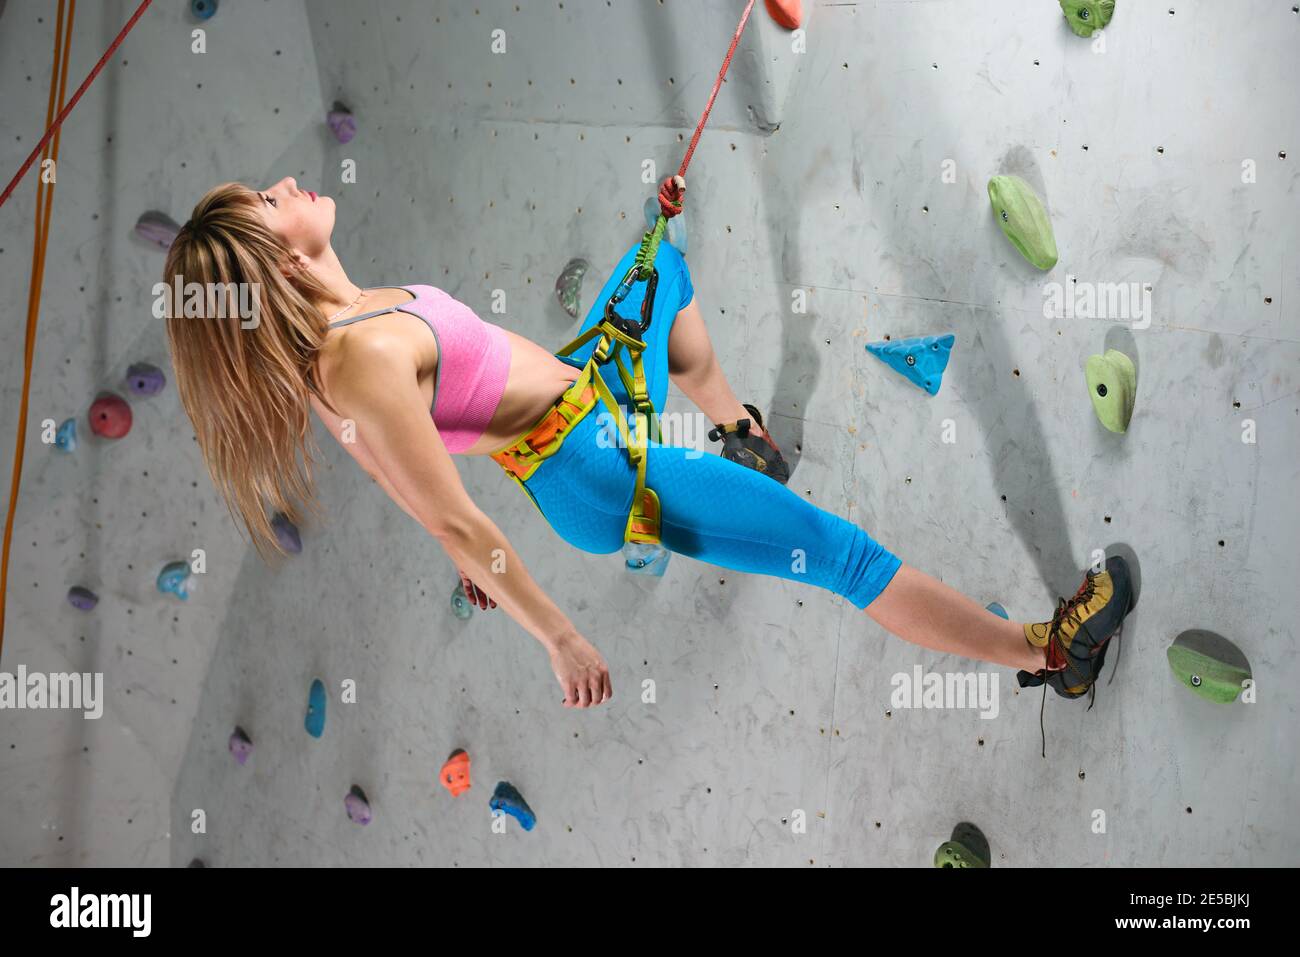 Junge Klettererin beim Entspannen auf dem Belay in der Kletterhalle. Extreme Sport und Indoor Climbing Konzept Stockfoto